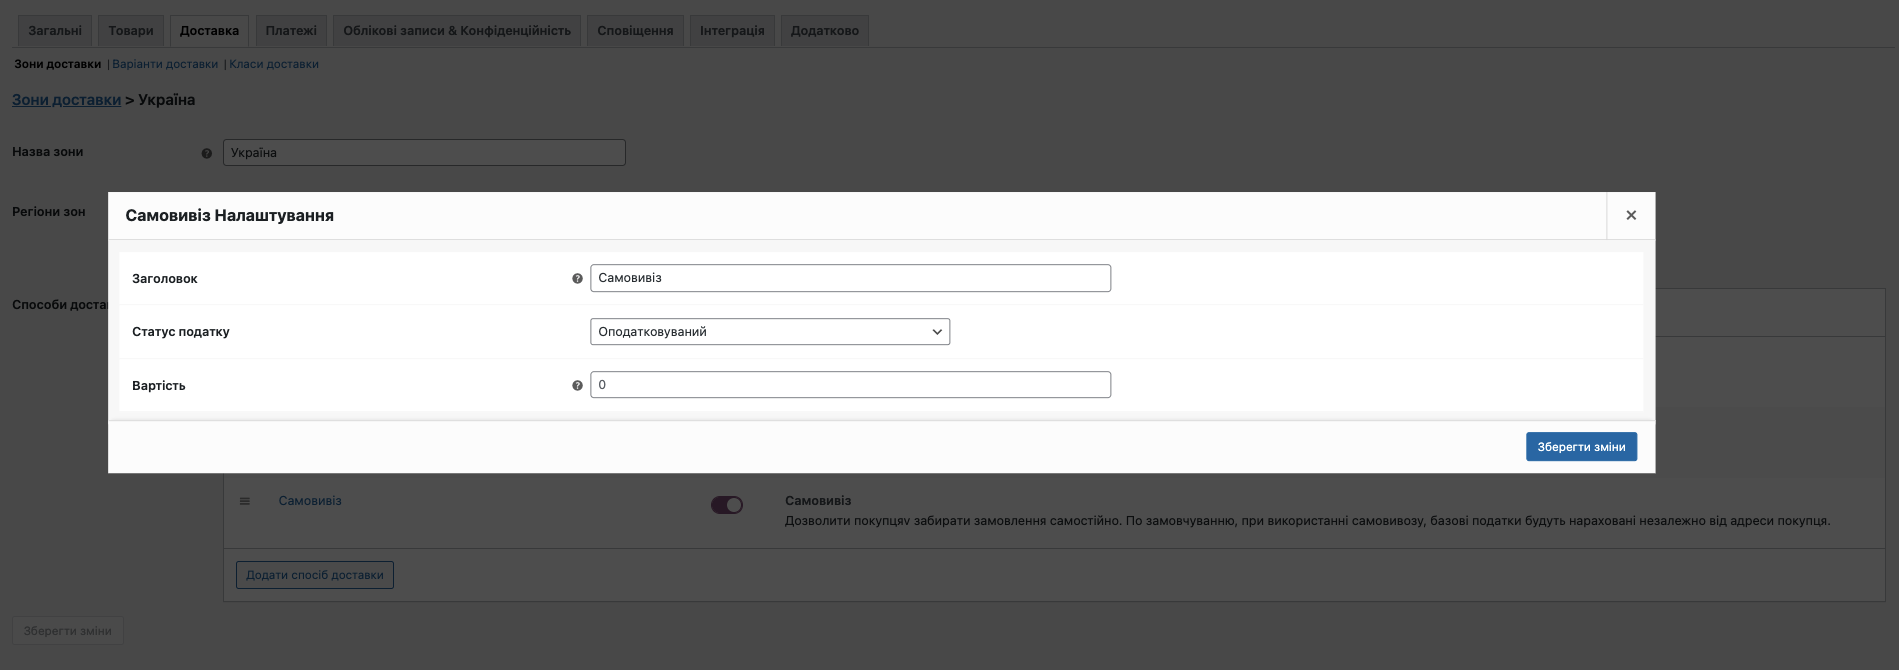 Безпечний і швидкий хостинг для WordPress в Україні | HostPro